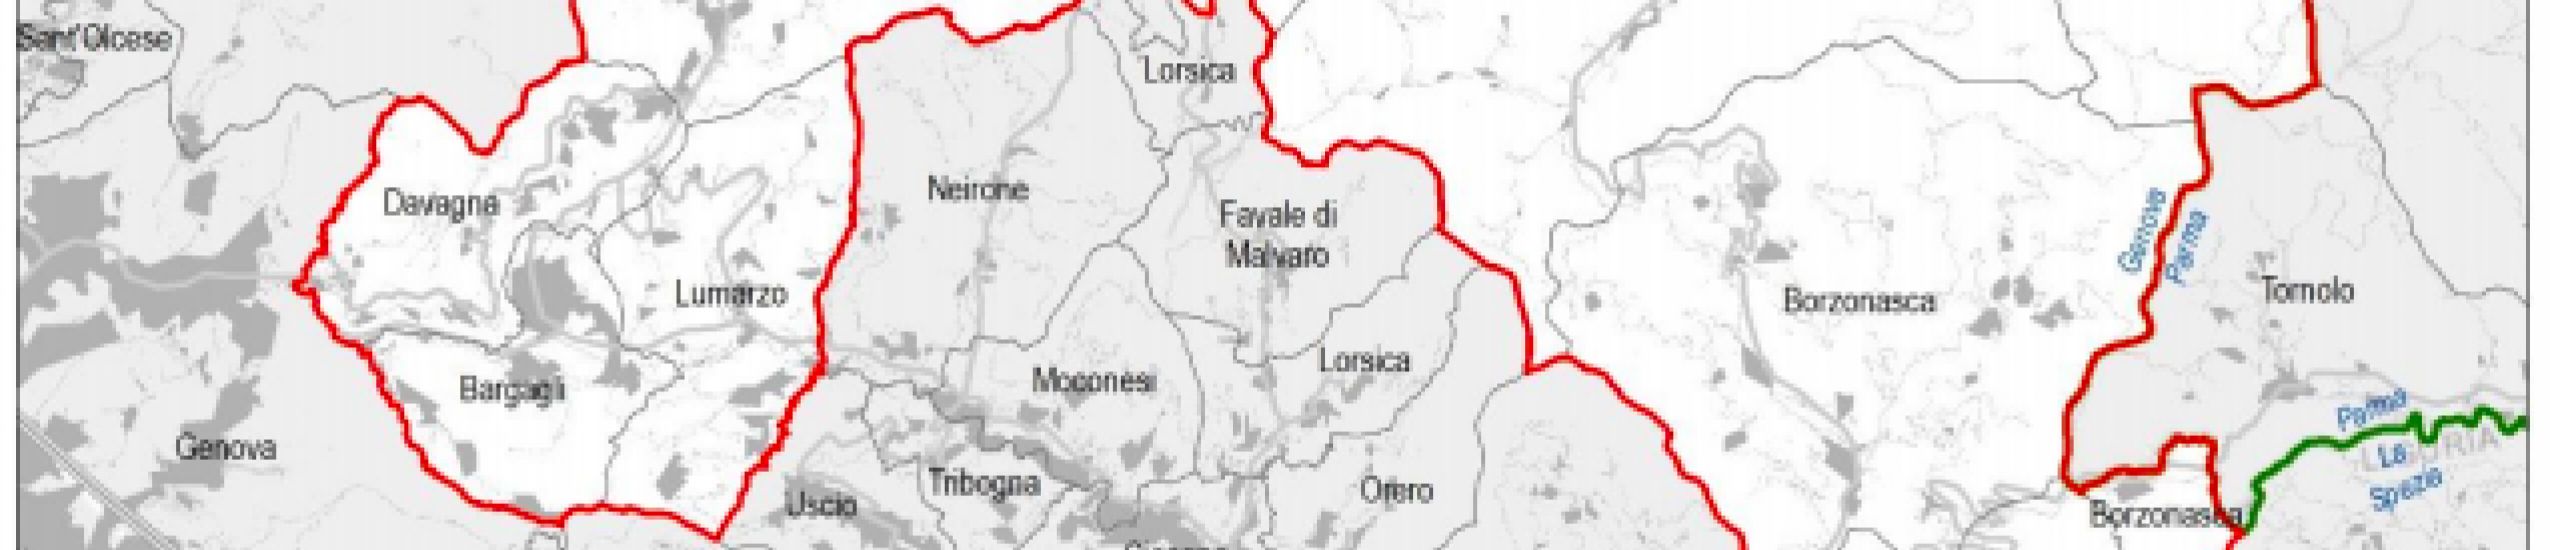 Area di progetto (elaborazione Regione Liguria su dati ISTAT 2018)